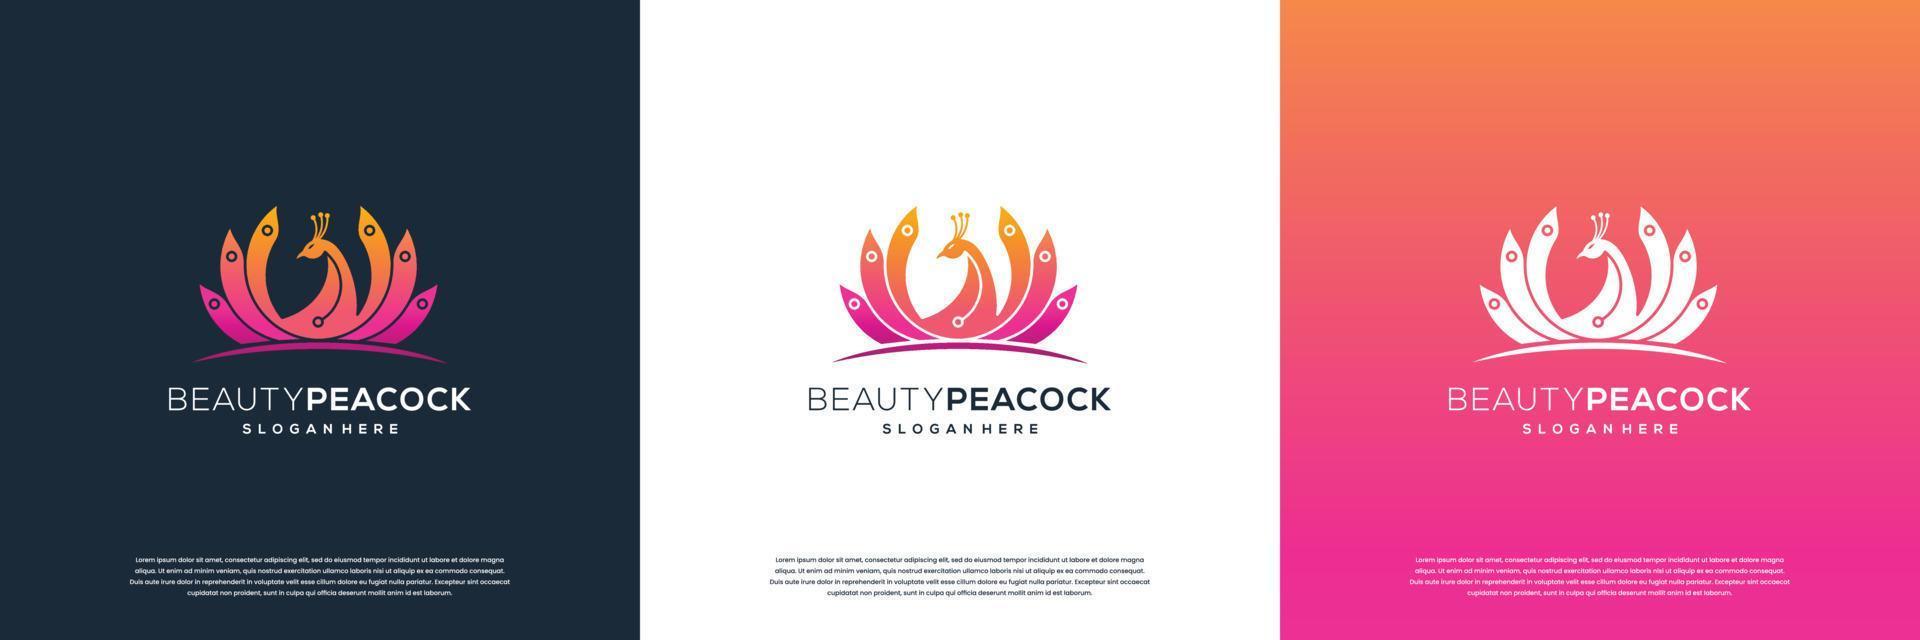 hermosa plantilla de diseño de logotipo de pavo real, concepto de diseño femenino para salón de belleza, masajes, cosméticos y spa. vector